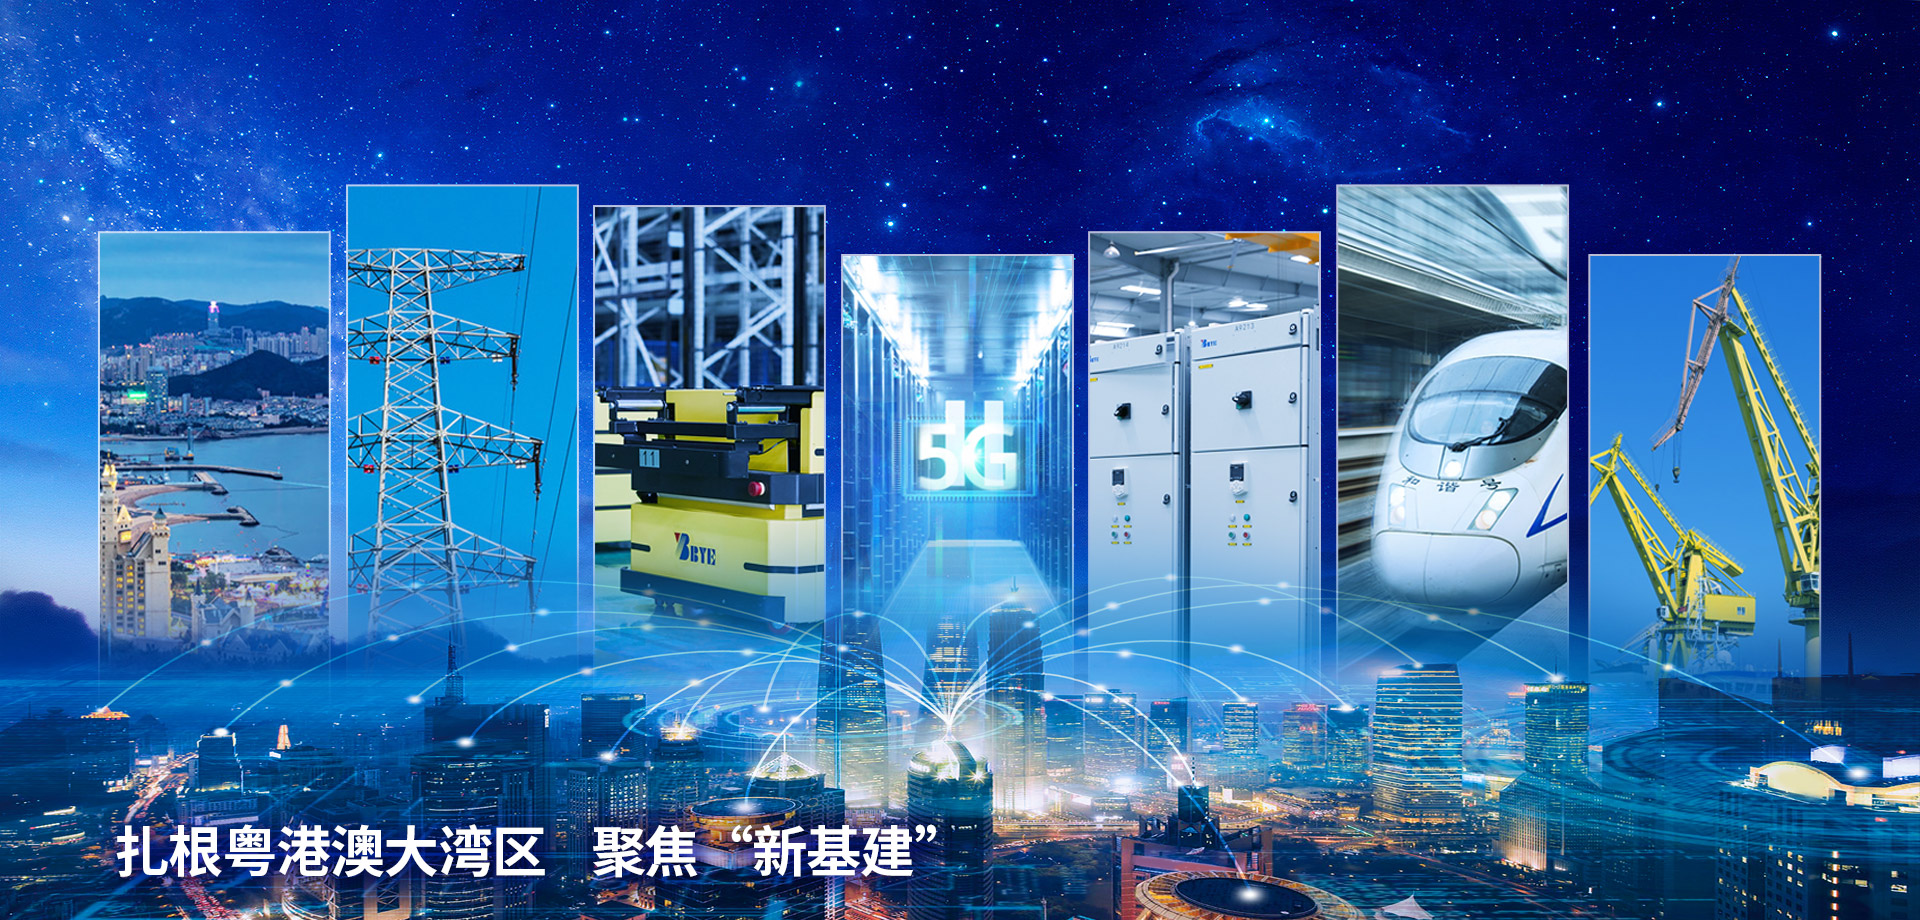 关于当前产品6600cc6公海彩船官网·(中国)官方网站的成功案例等相关图片